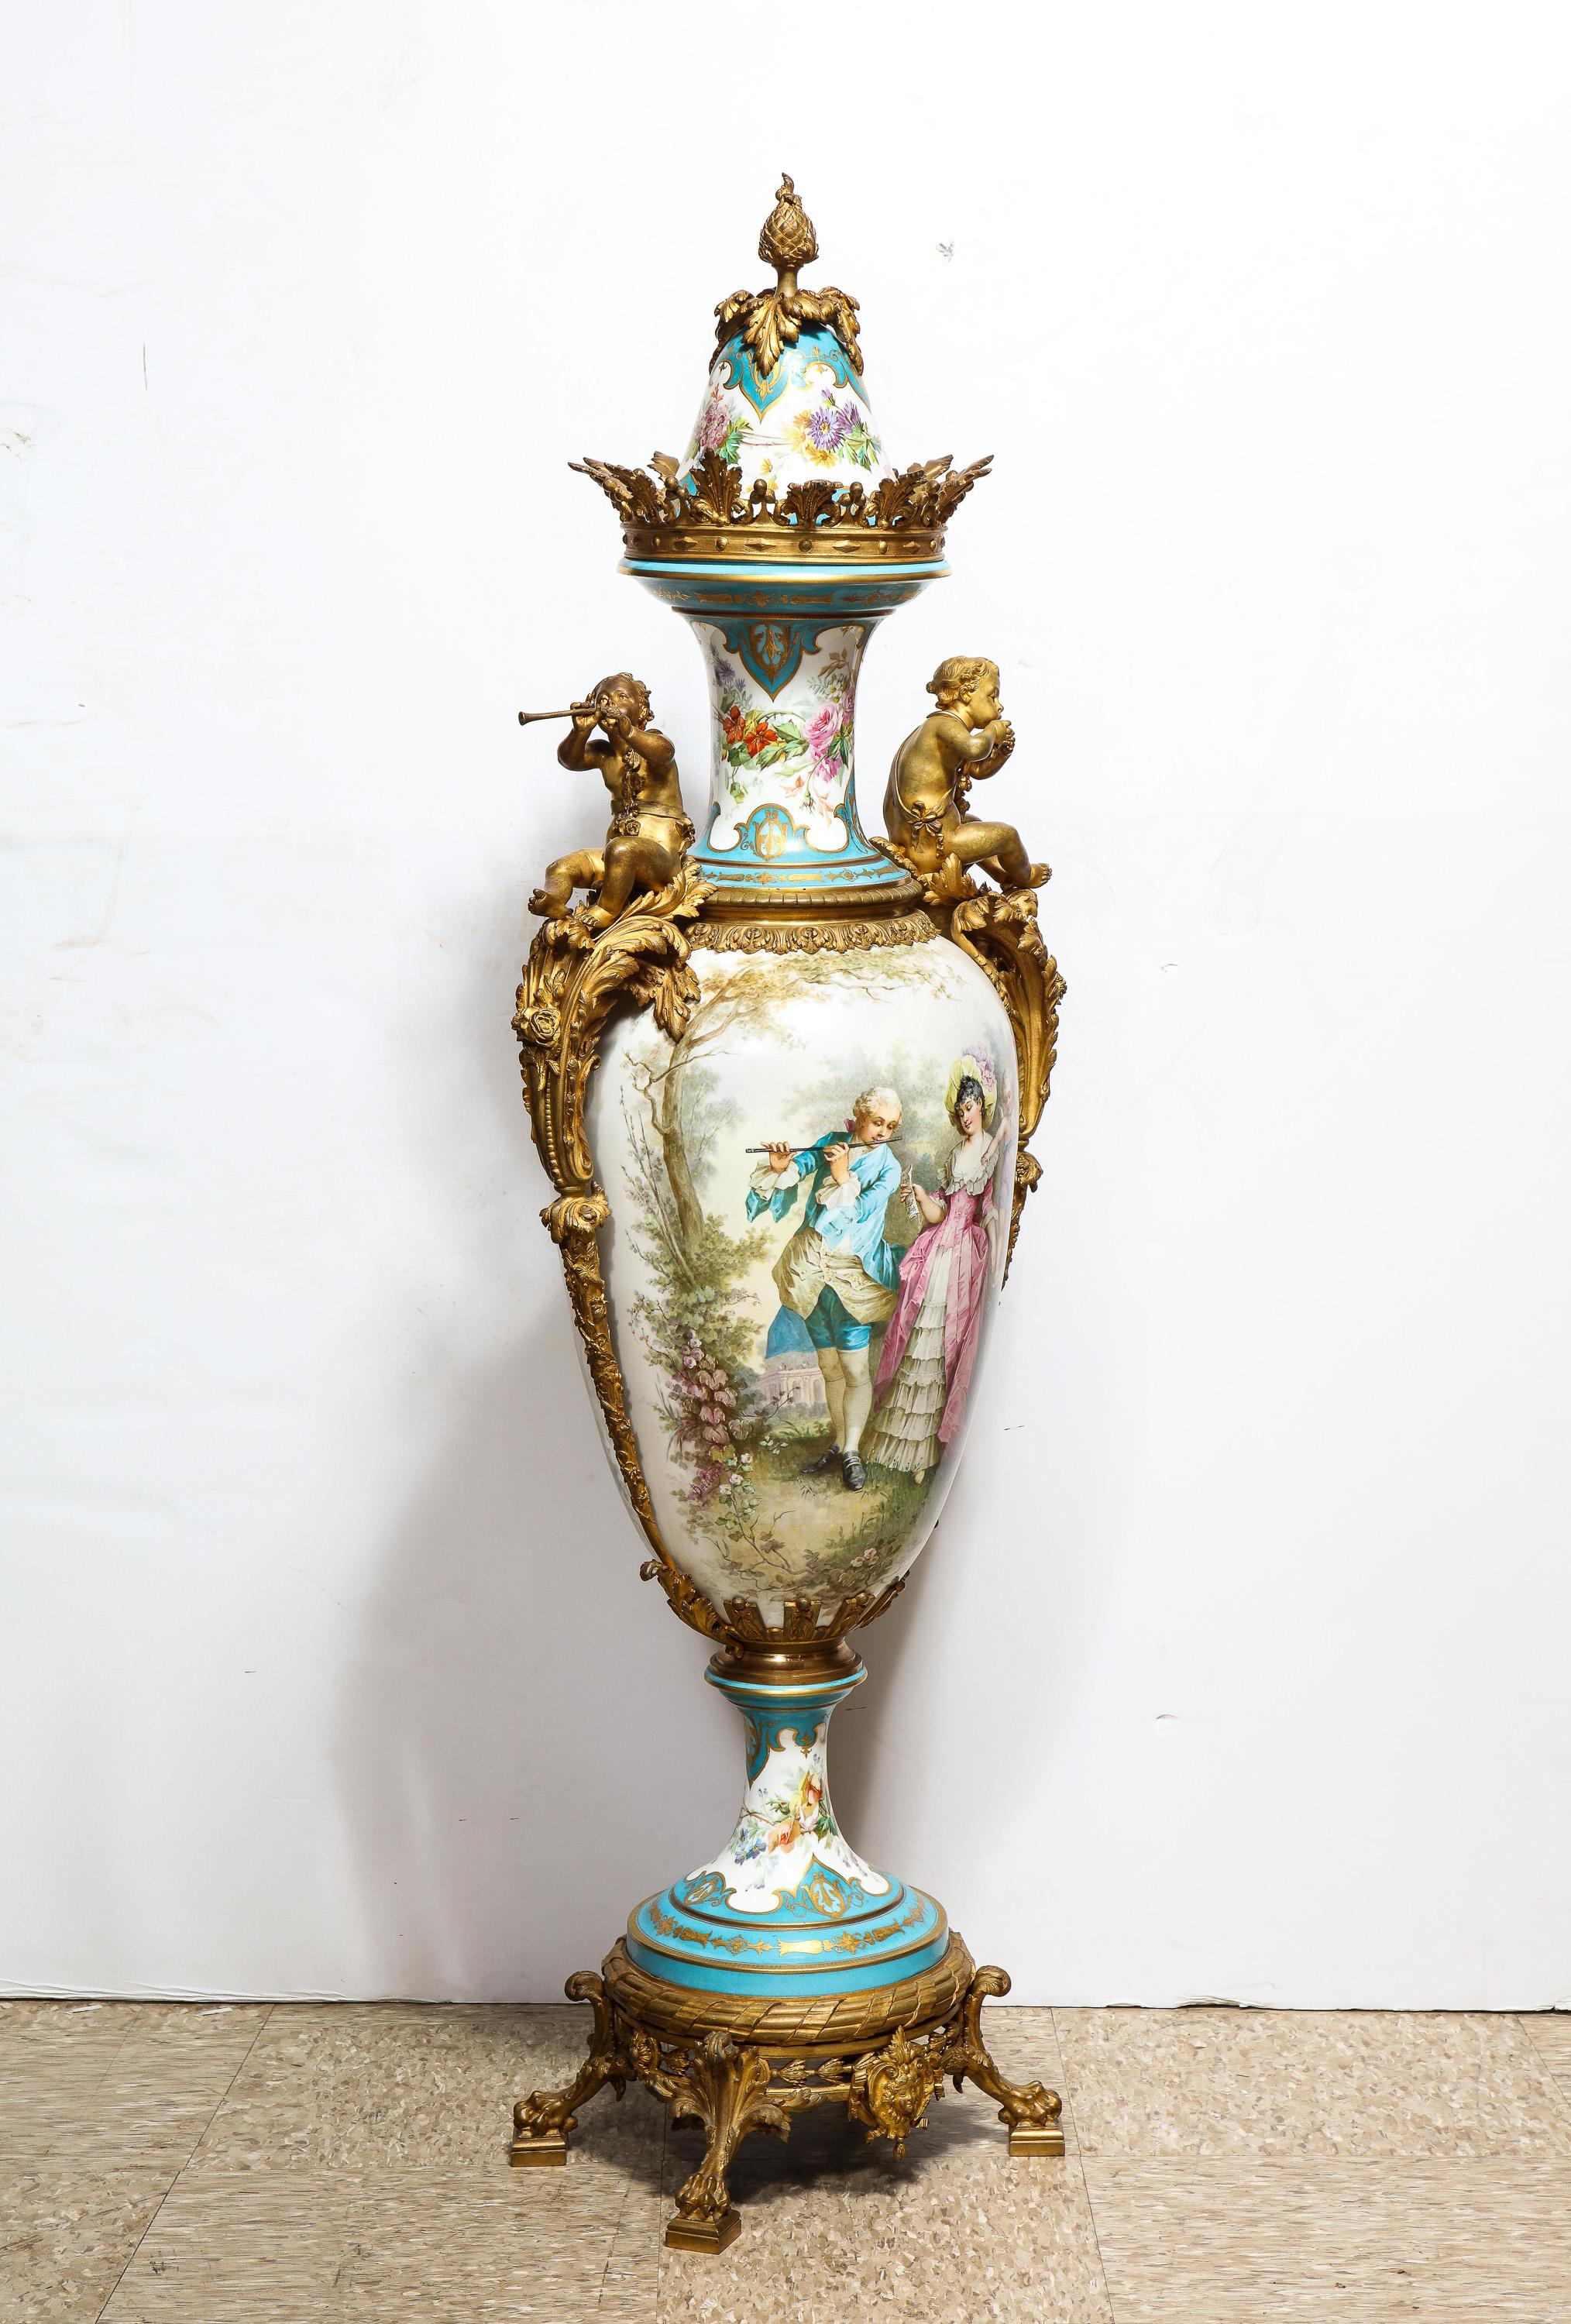 Handbemalte Vase und Deckel aus Sèvres-Porzellan mit Ormolu-Montierung, um 1838.

Diese monumentale Vase aus Sèvres-Porzellan ist 56 Zoll hoch und wunderschön handbemalt mit klassischen Szenen von Liebenden und Amoretten auf türkisblauem